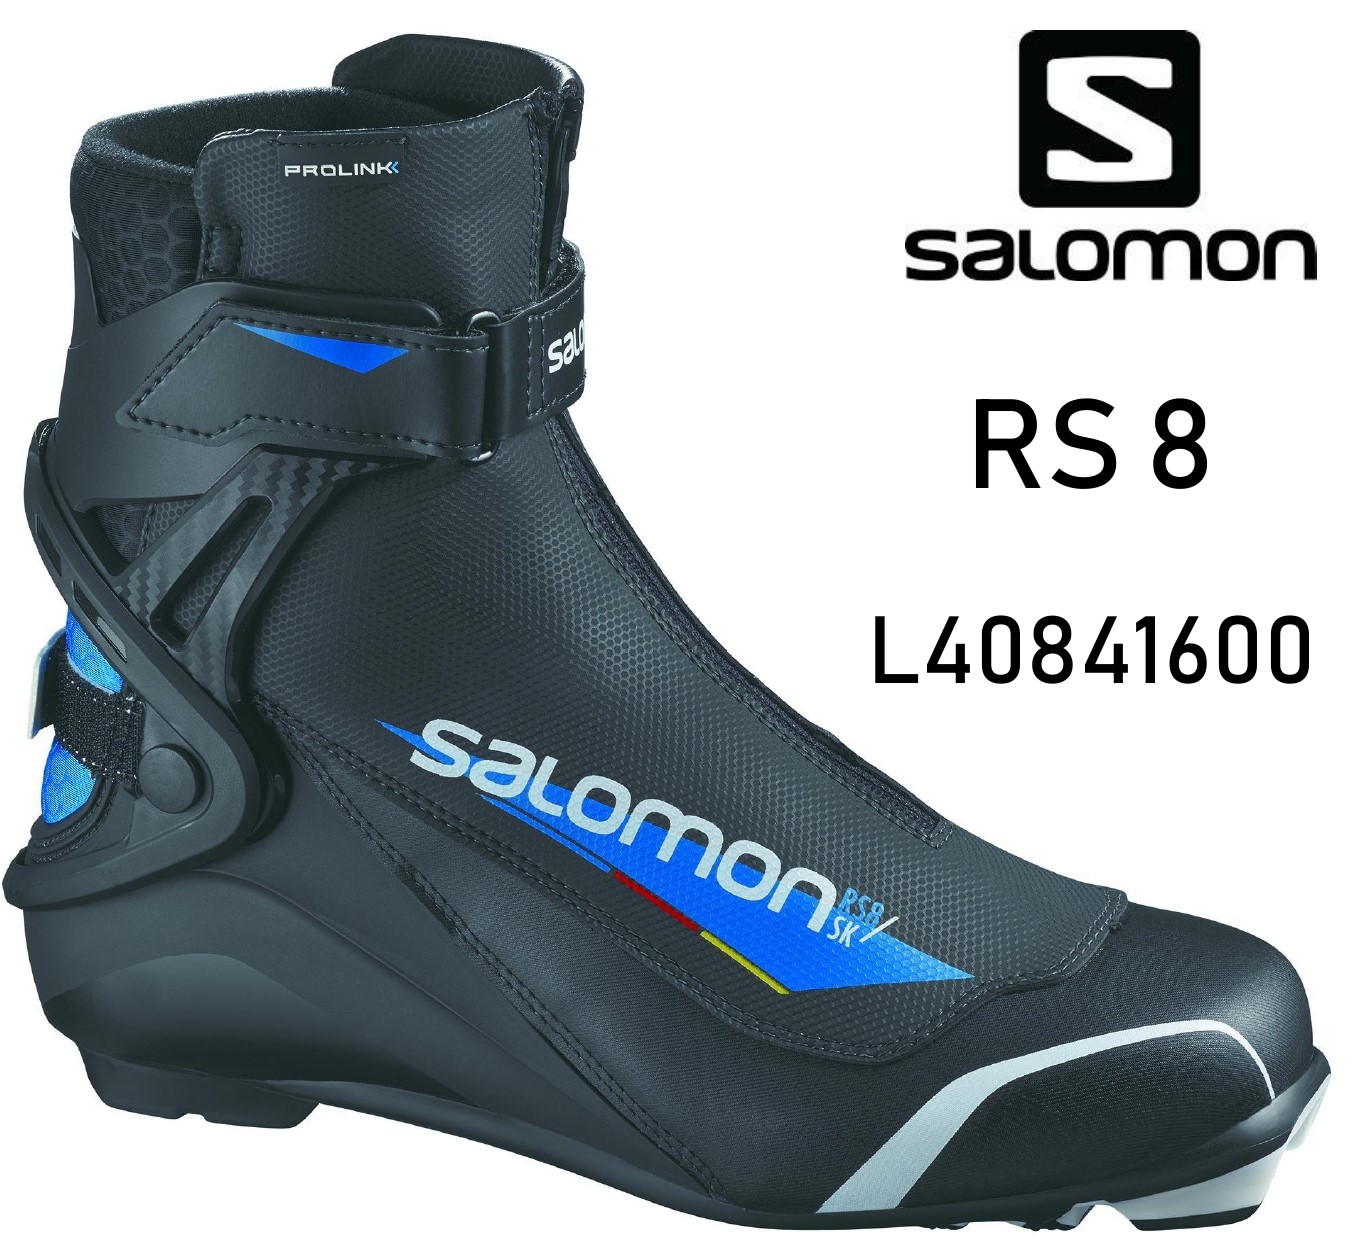 ニッセンスポーツ / SALOMON [サロモン] RS 8 L40841600 クロスカントリースキー スケーティングブーツ 【NNN/プロリンク】